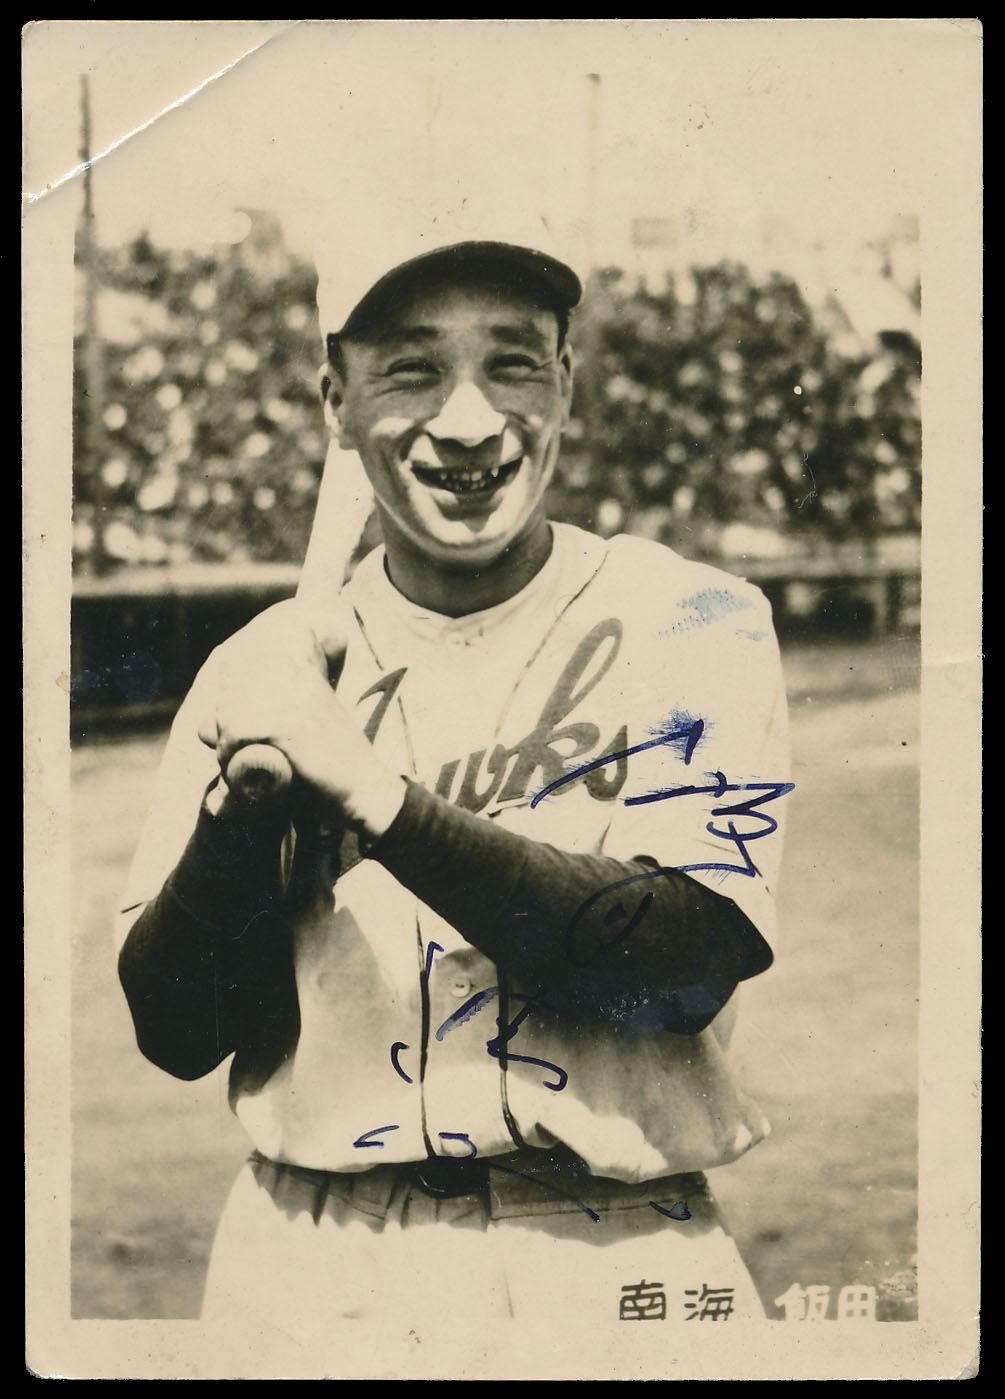 Japan Baseball Hall of Fame Autographs